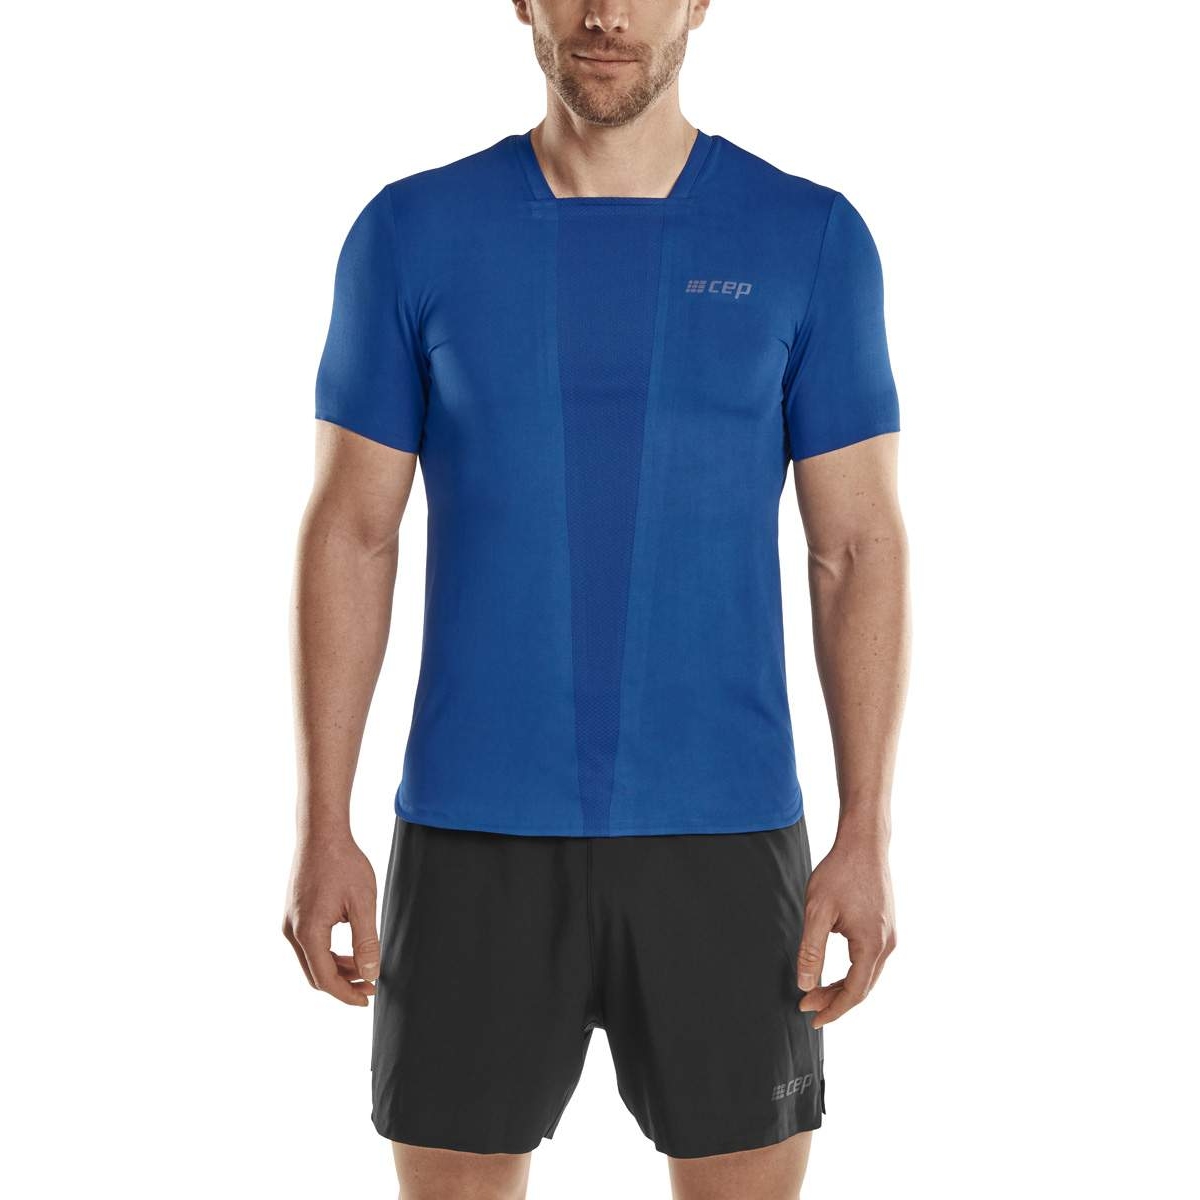 Produktbild von CEP The Run T-Shirt Herren - blau